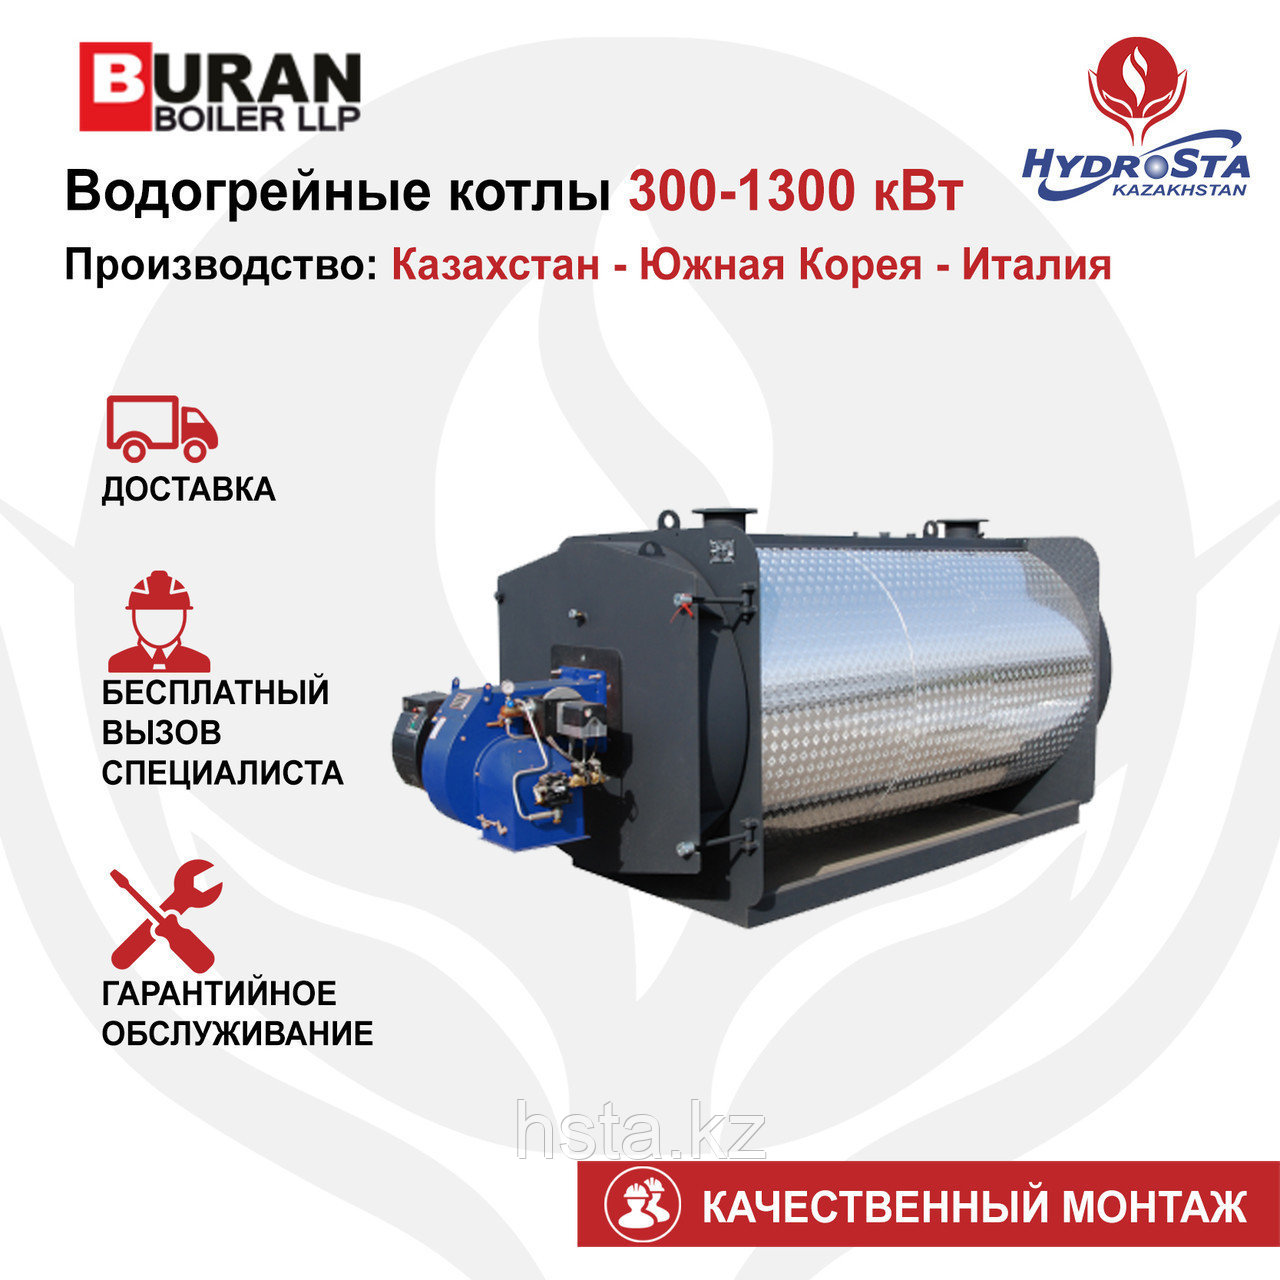 Котел одноконтурный Cronos BB-750 (Buran Boiler) 750кВт (цена без горелки)